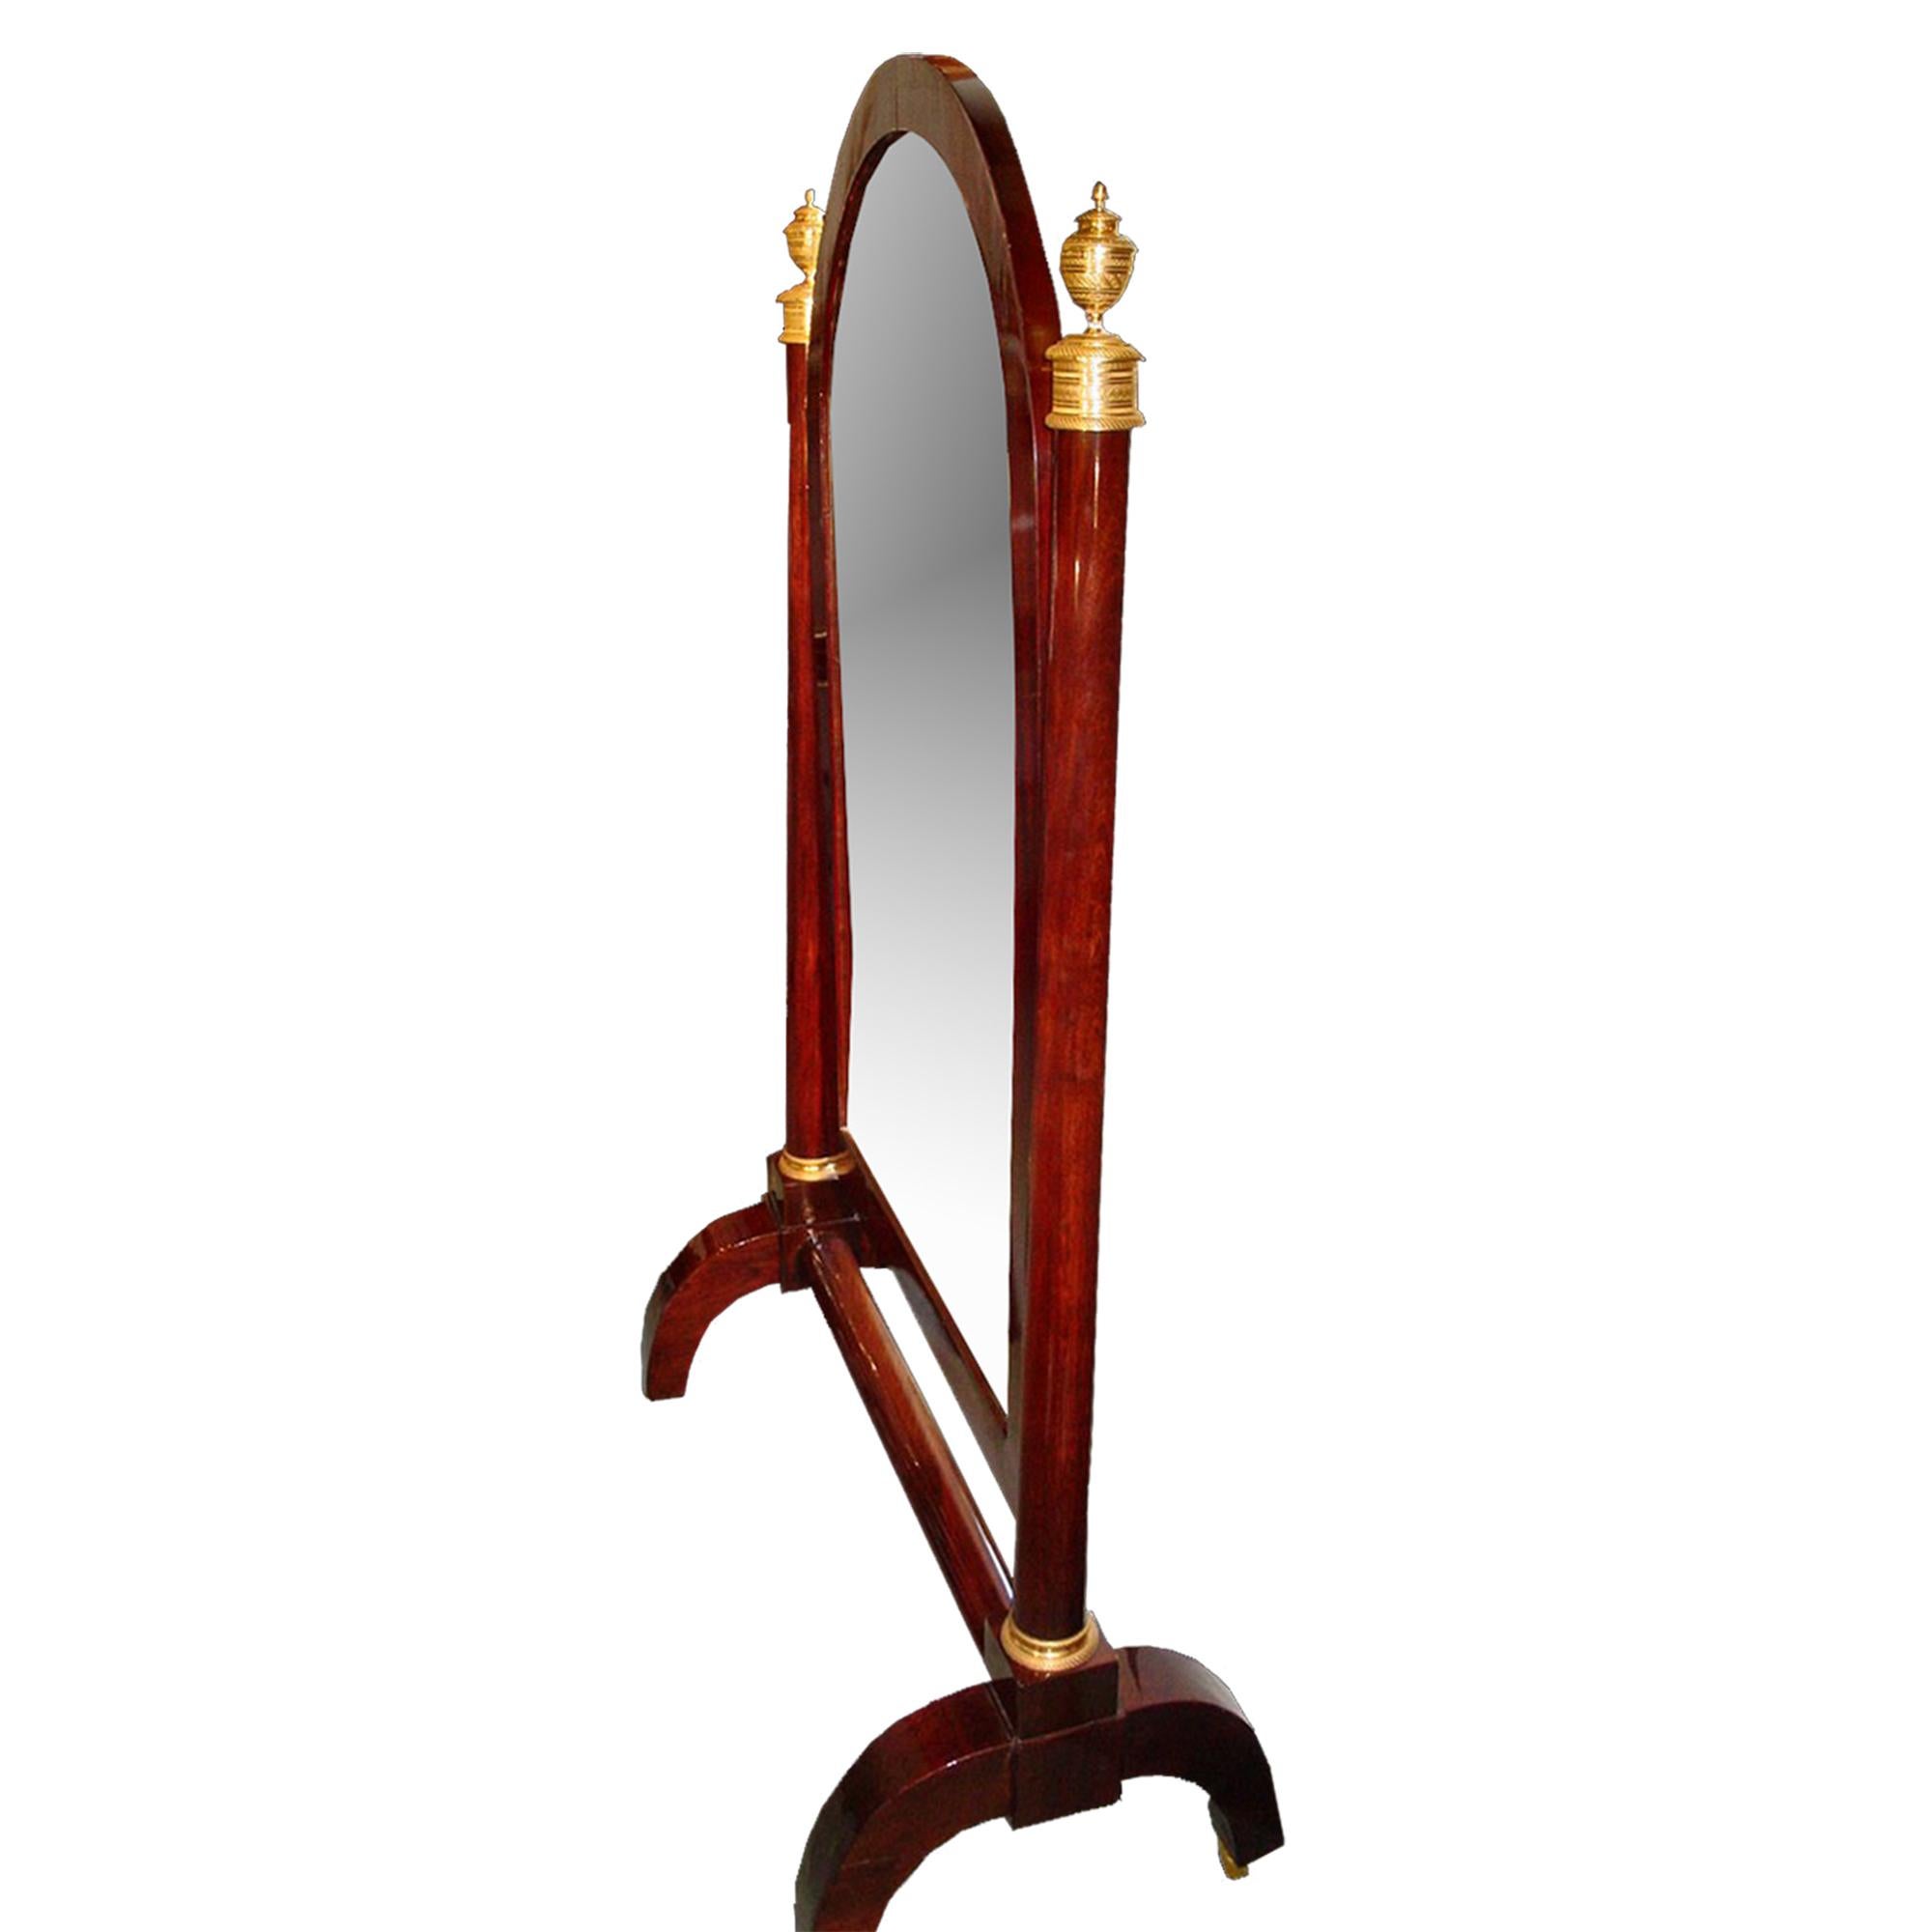 Miroir de Psyché en acajou de style néo-classique français du milieu du XIXe siècle. L'ensemble repose sur quatre pieds à volutes en C munis de roulettes en bronze doré et réunis par une civière cylindrique. Le miroir, dans un cadre en placage de